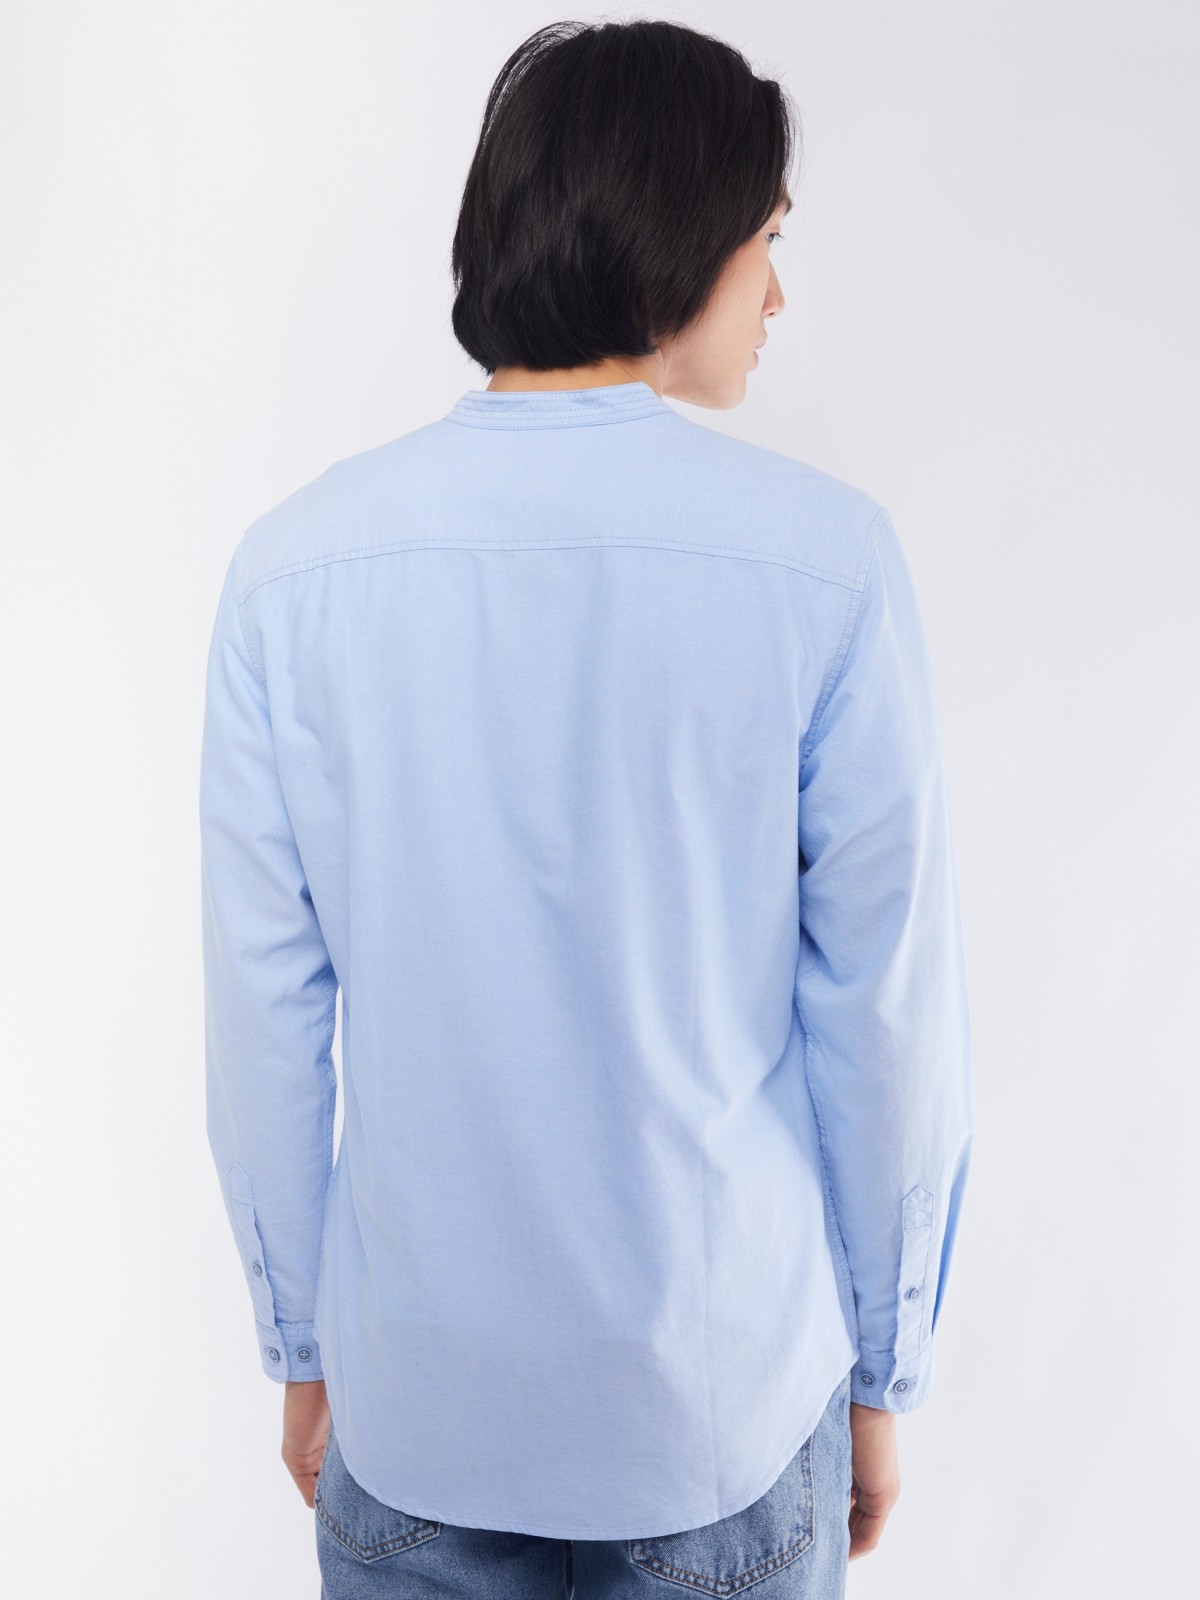 Офисная рубашка из хлопка с воротником-стойкой и длинным рукавом zolla 014122159033, цвет светло-голубой, размер S - фото 6